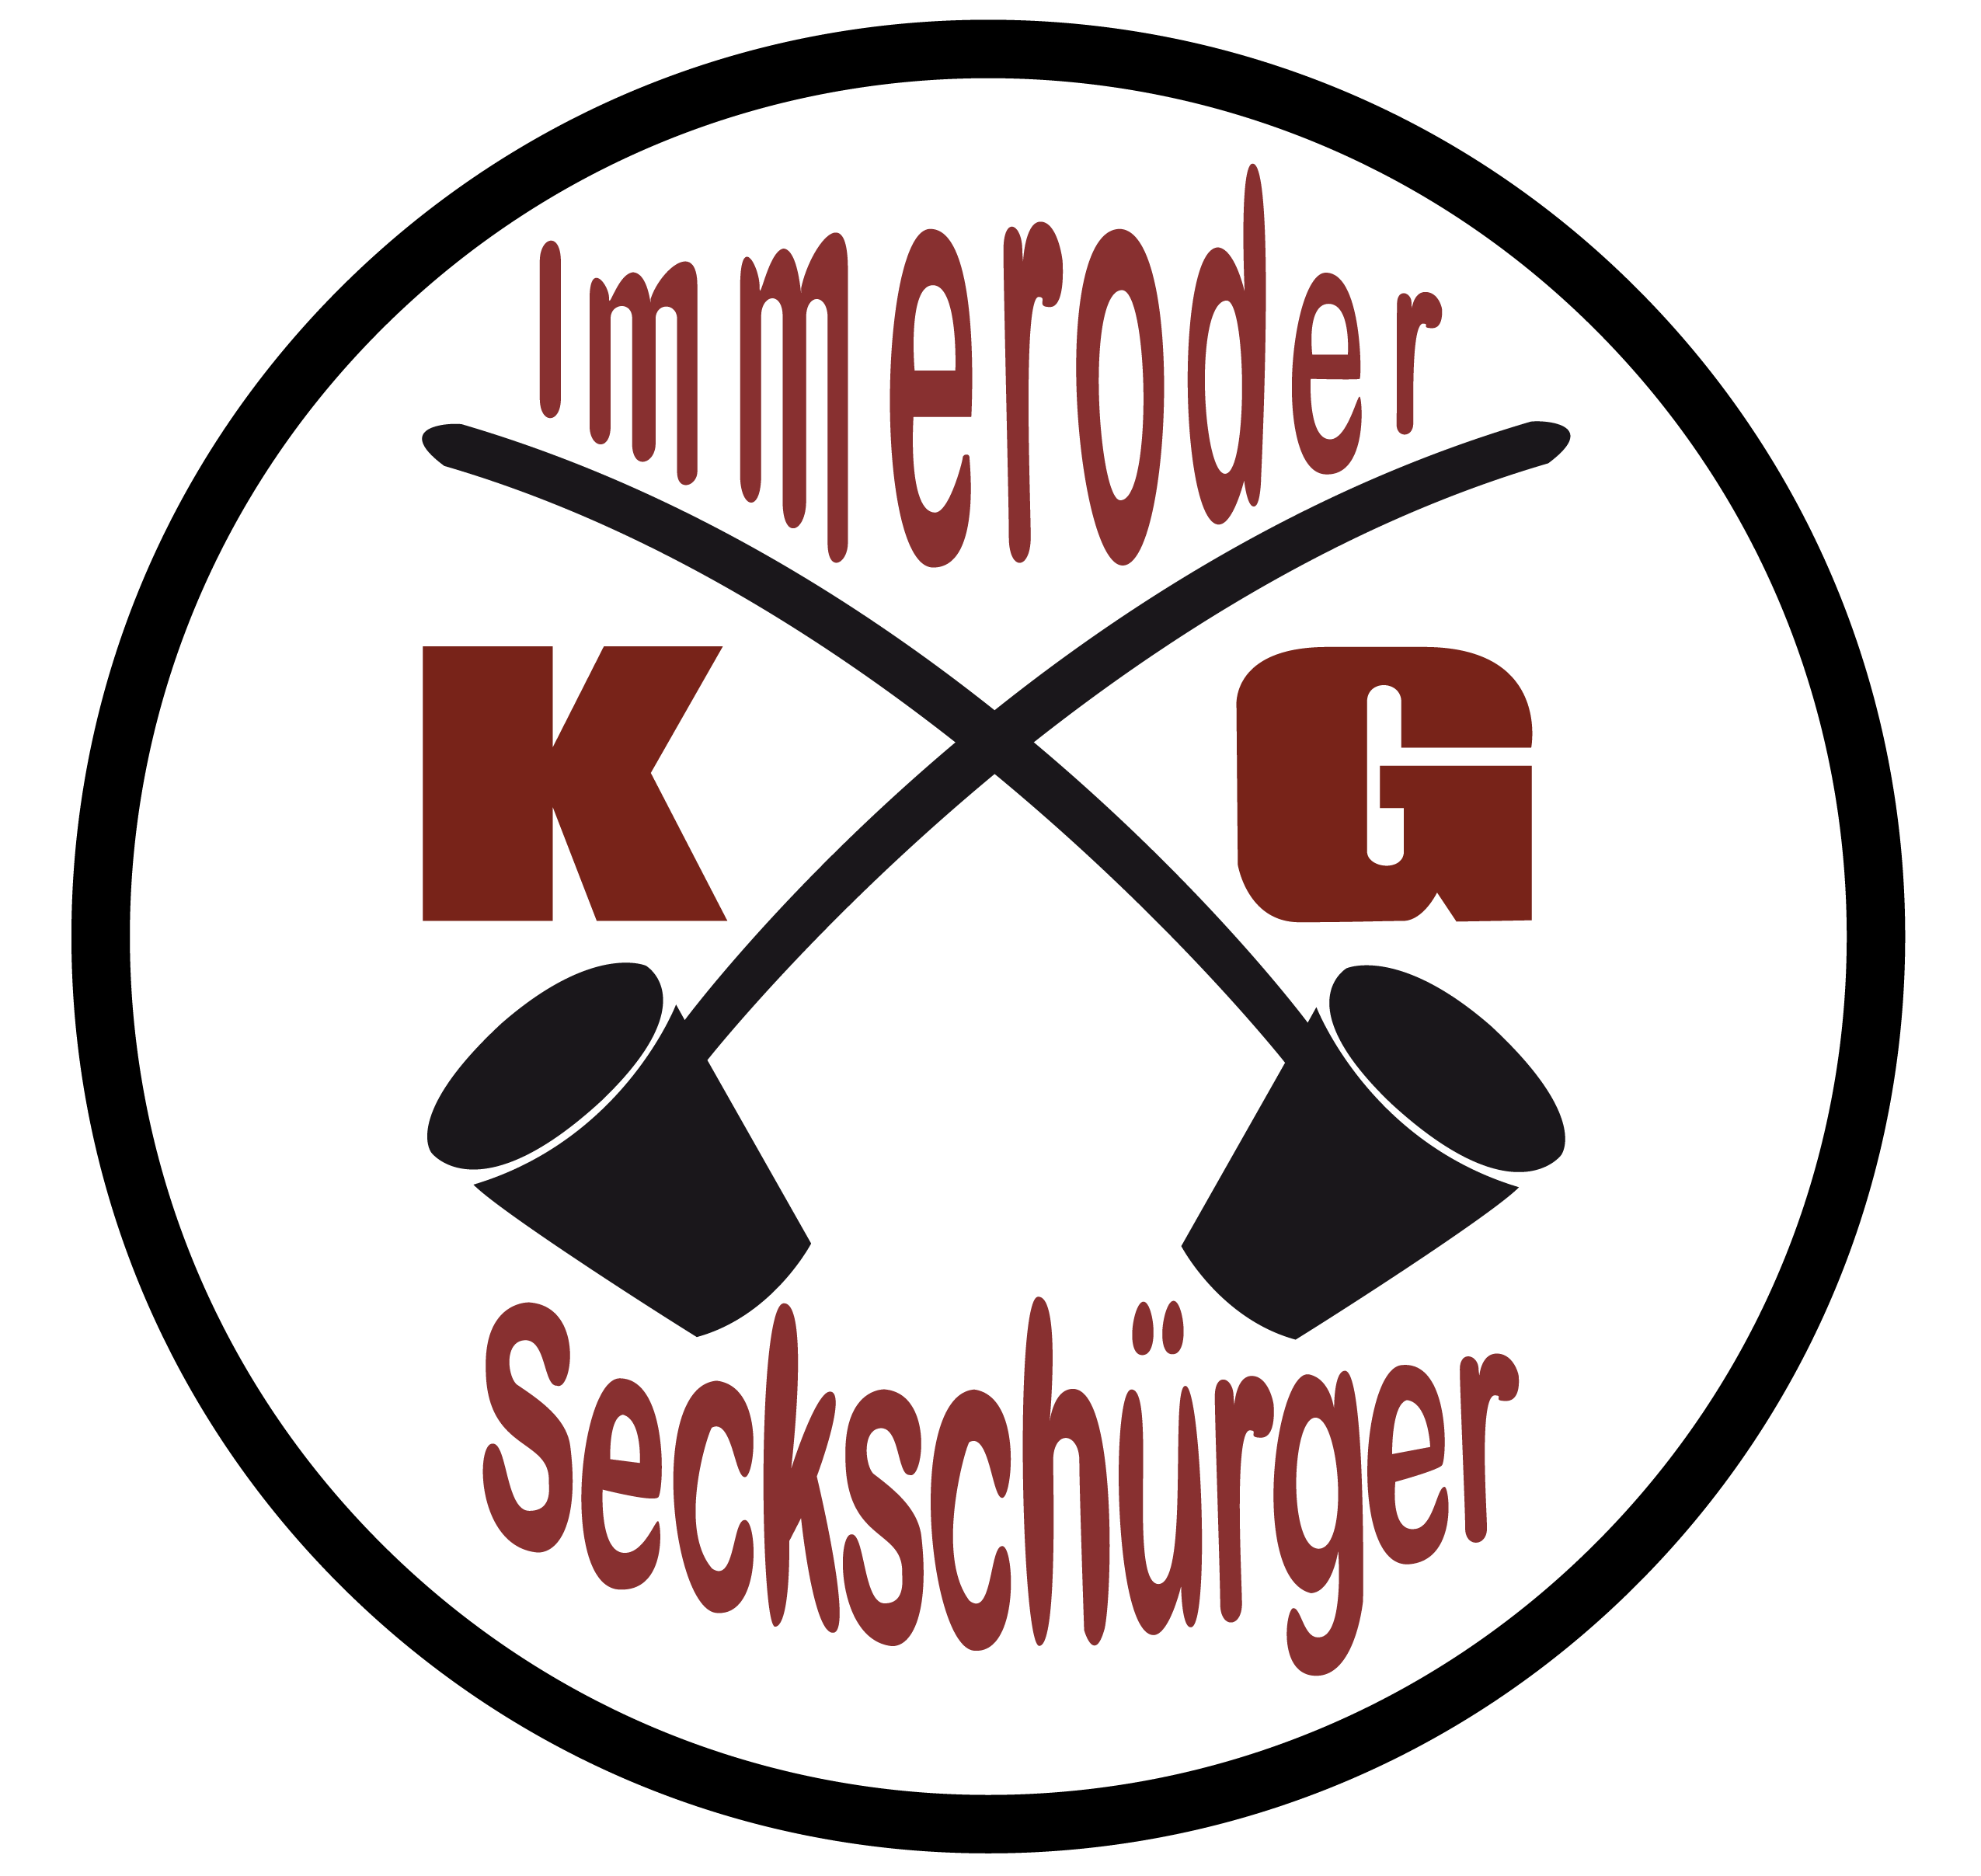 KG Immeroder Seckschürger